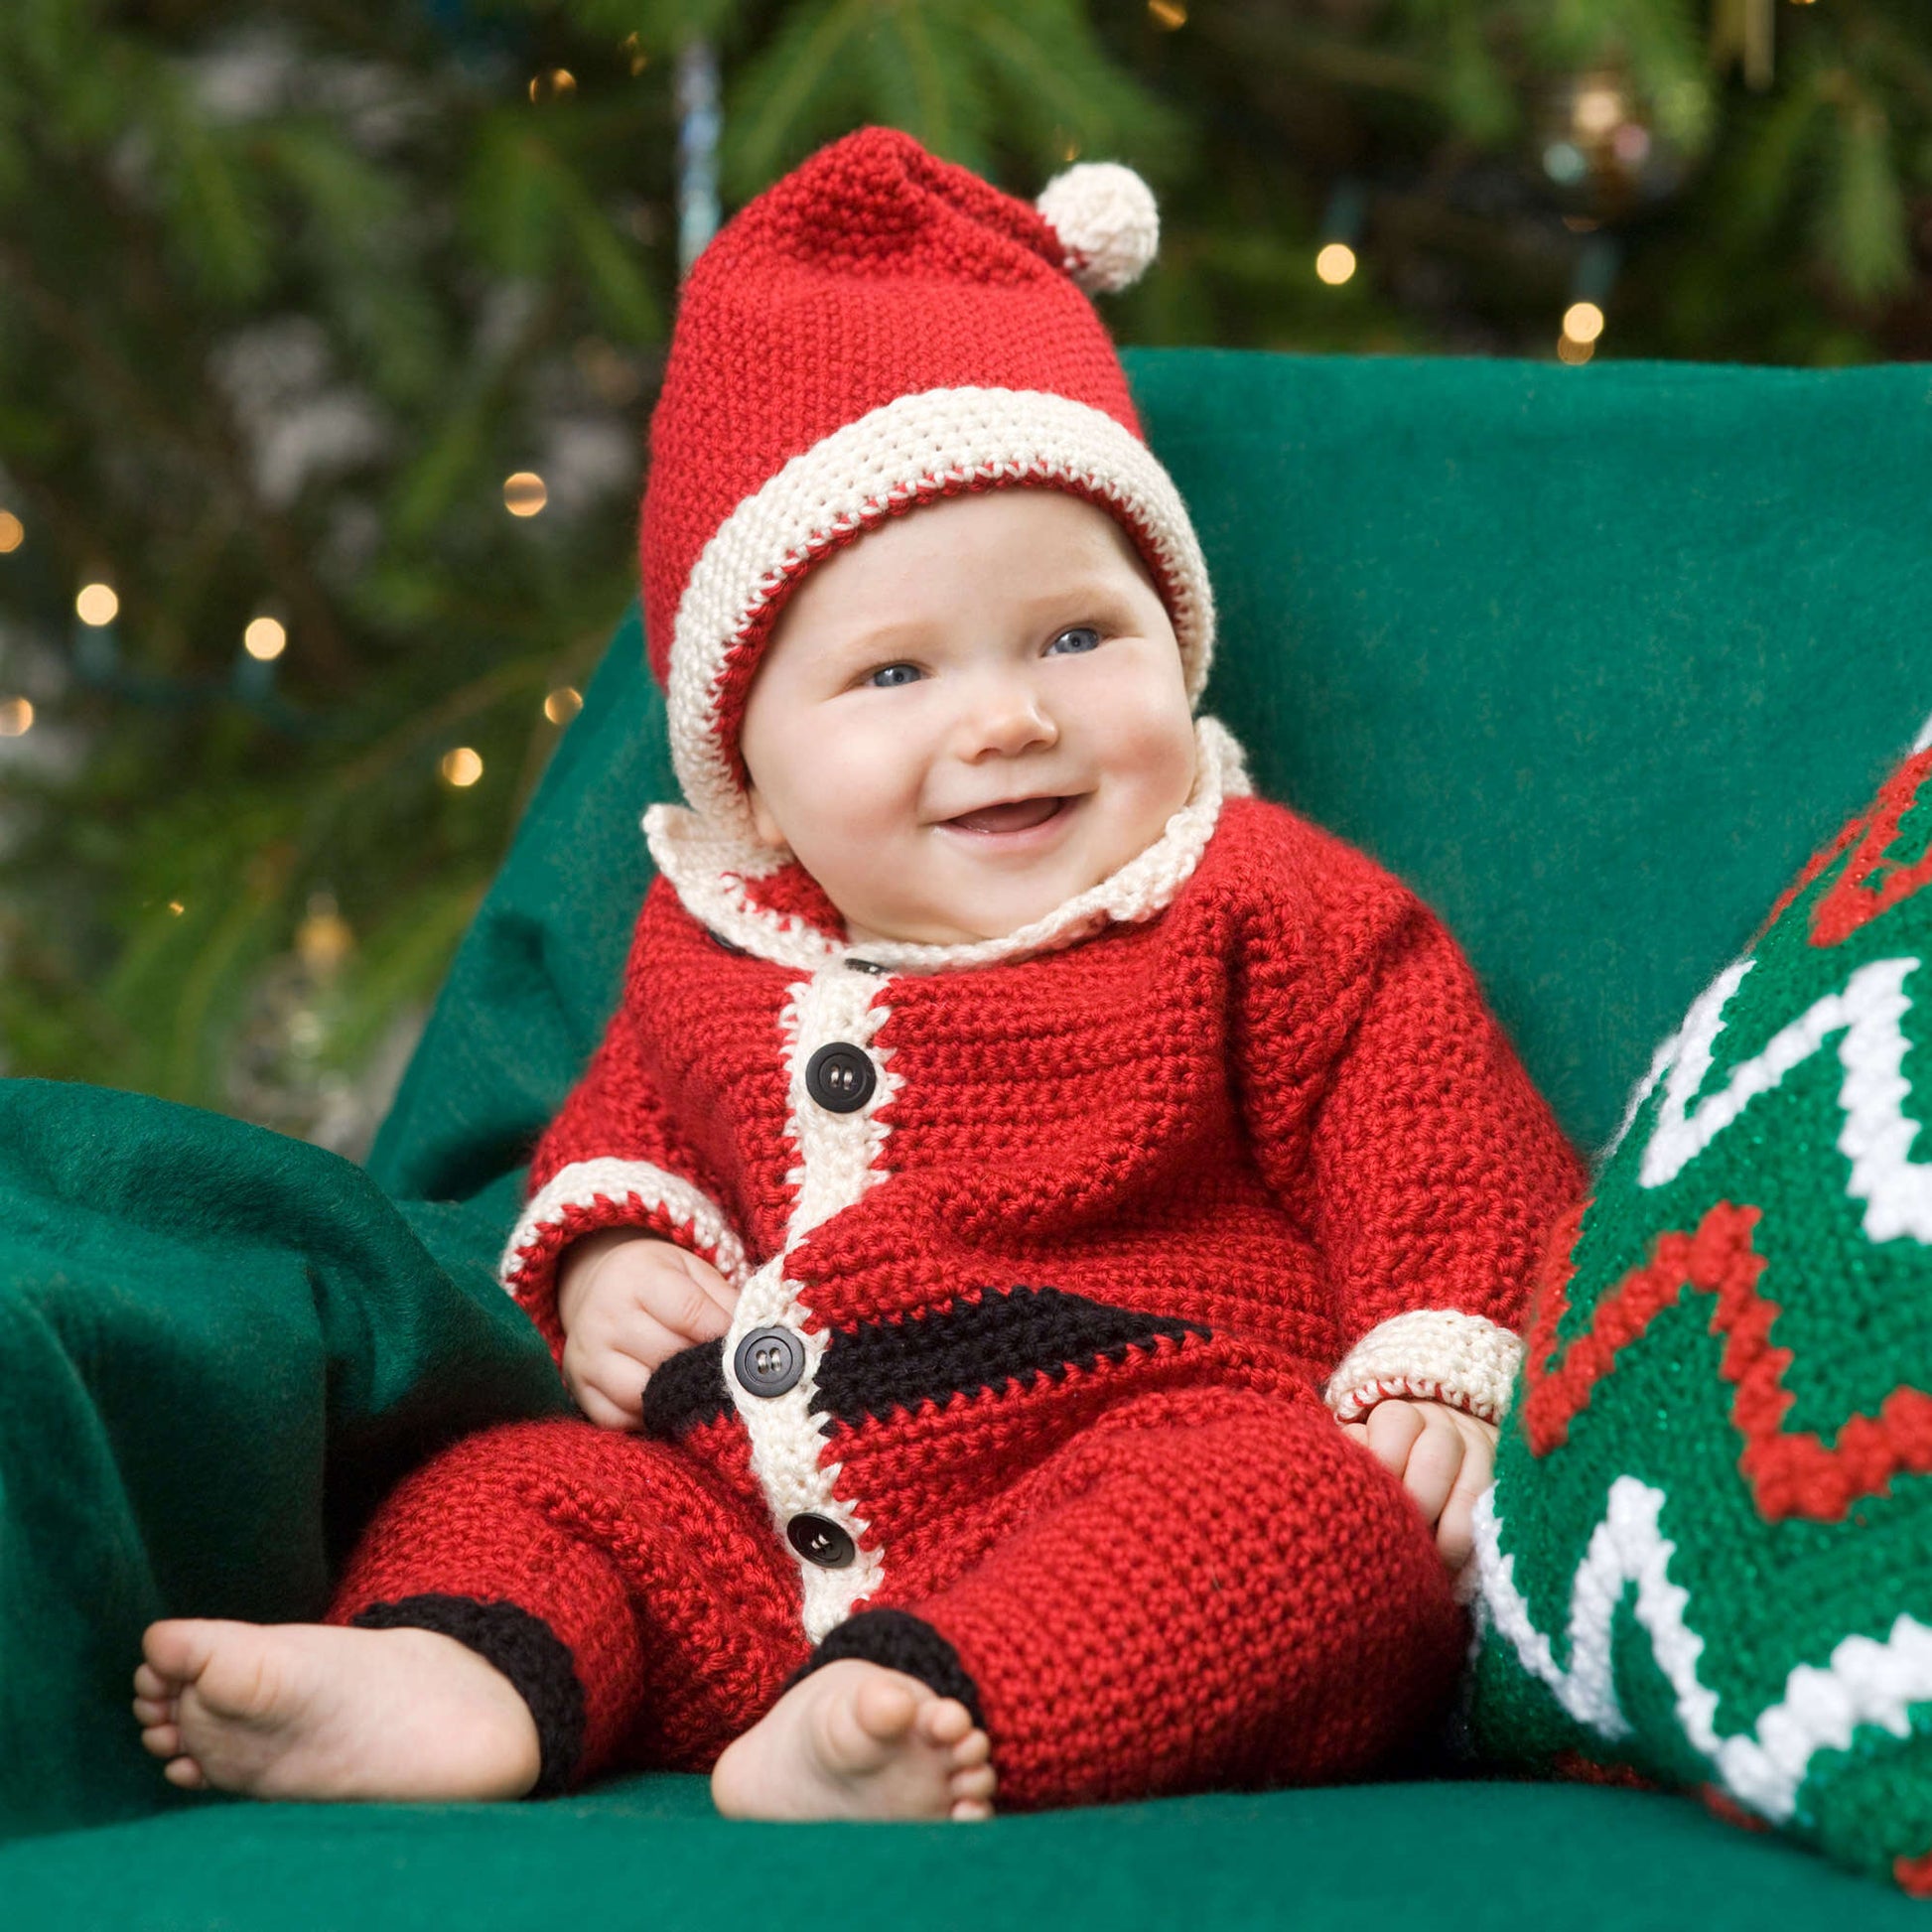 Red Heart Infant Santa Suit & Hat Red Heart Infant Santa Suit & Hat